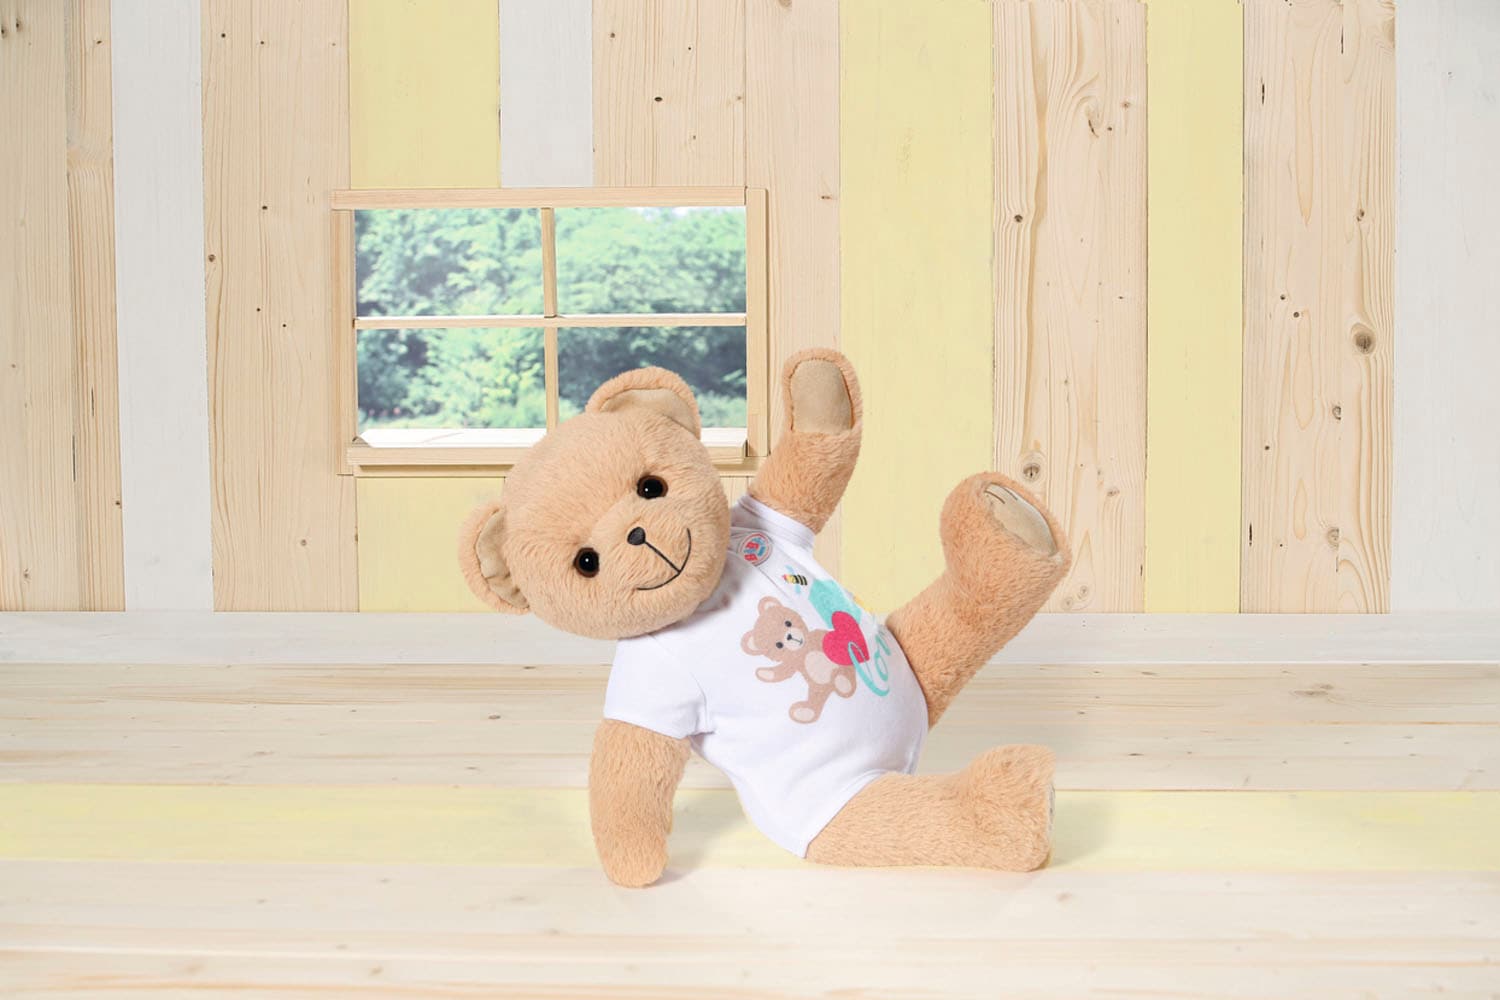 Baby Born Kuscheltier »Teddy Bär, weiss«, inklusive Strampler - Teddybär